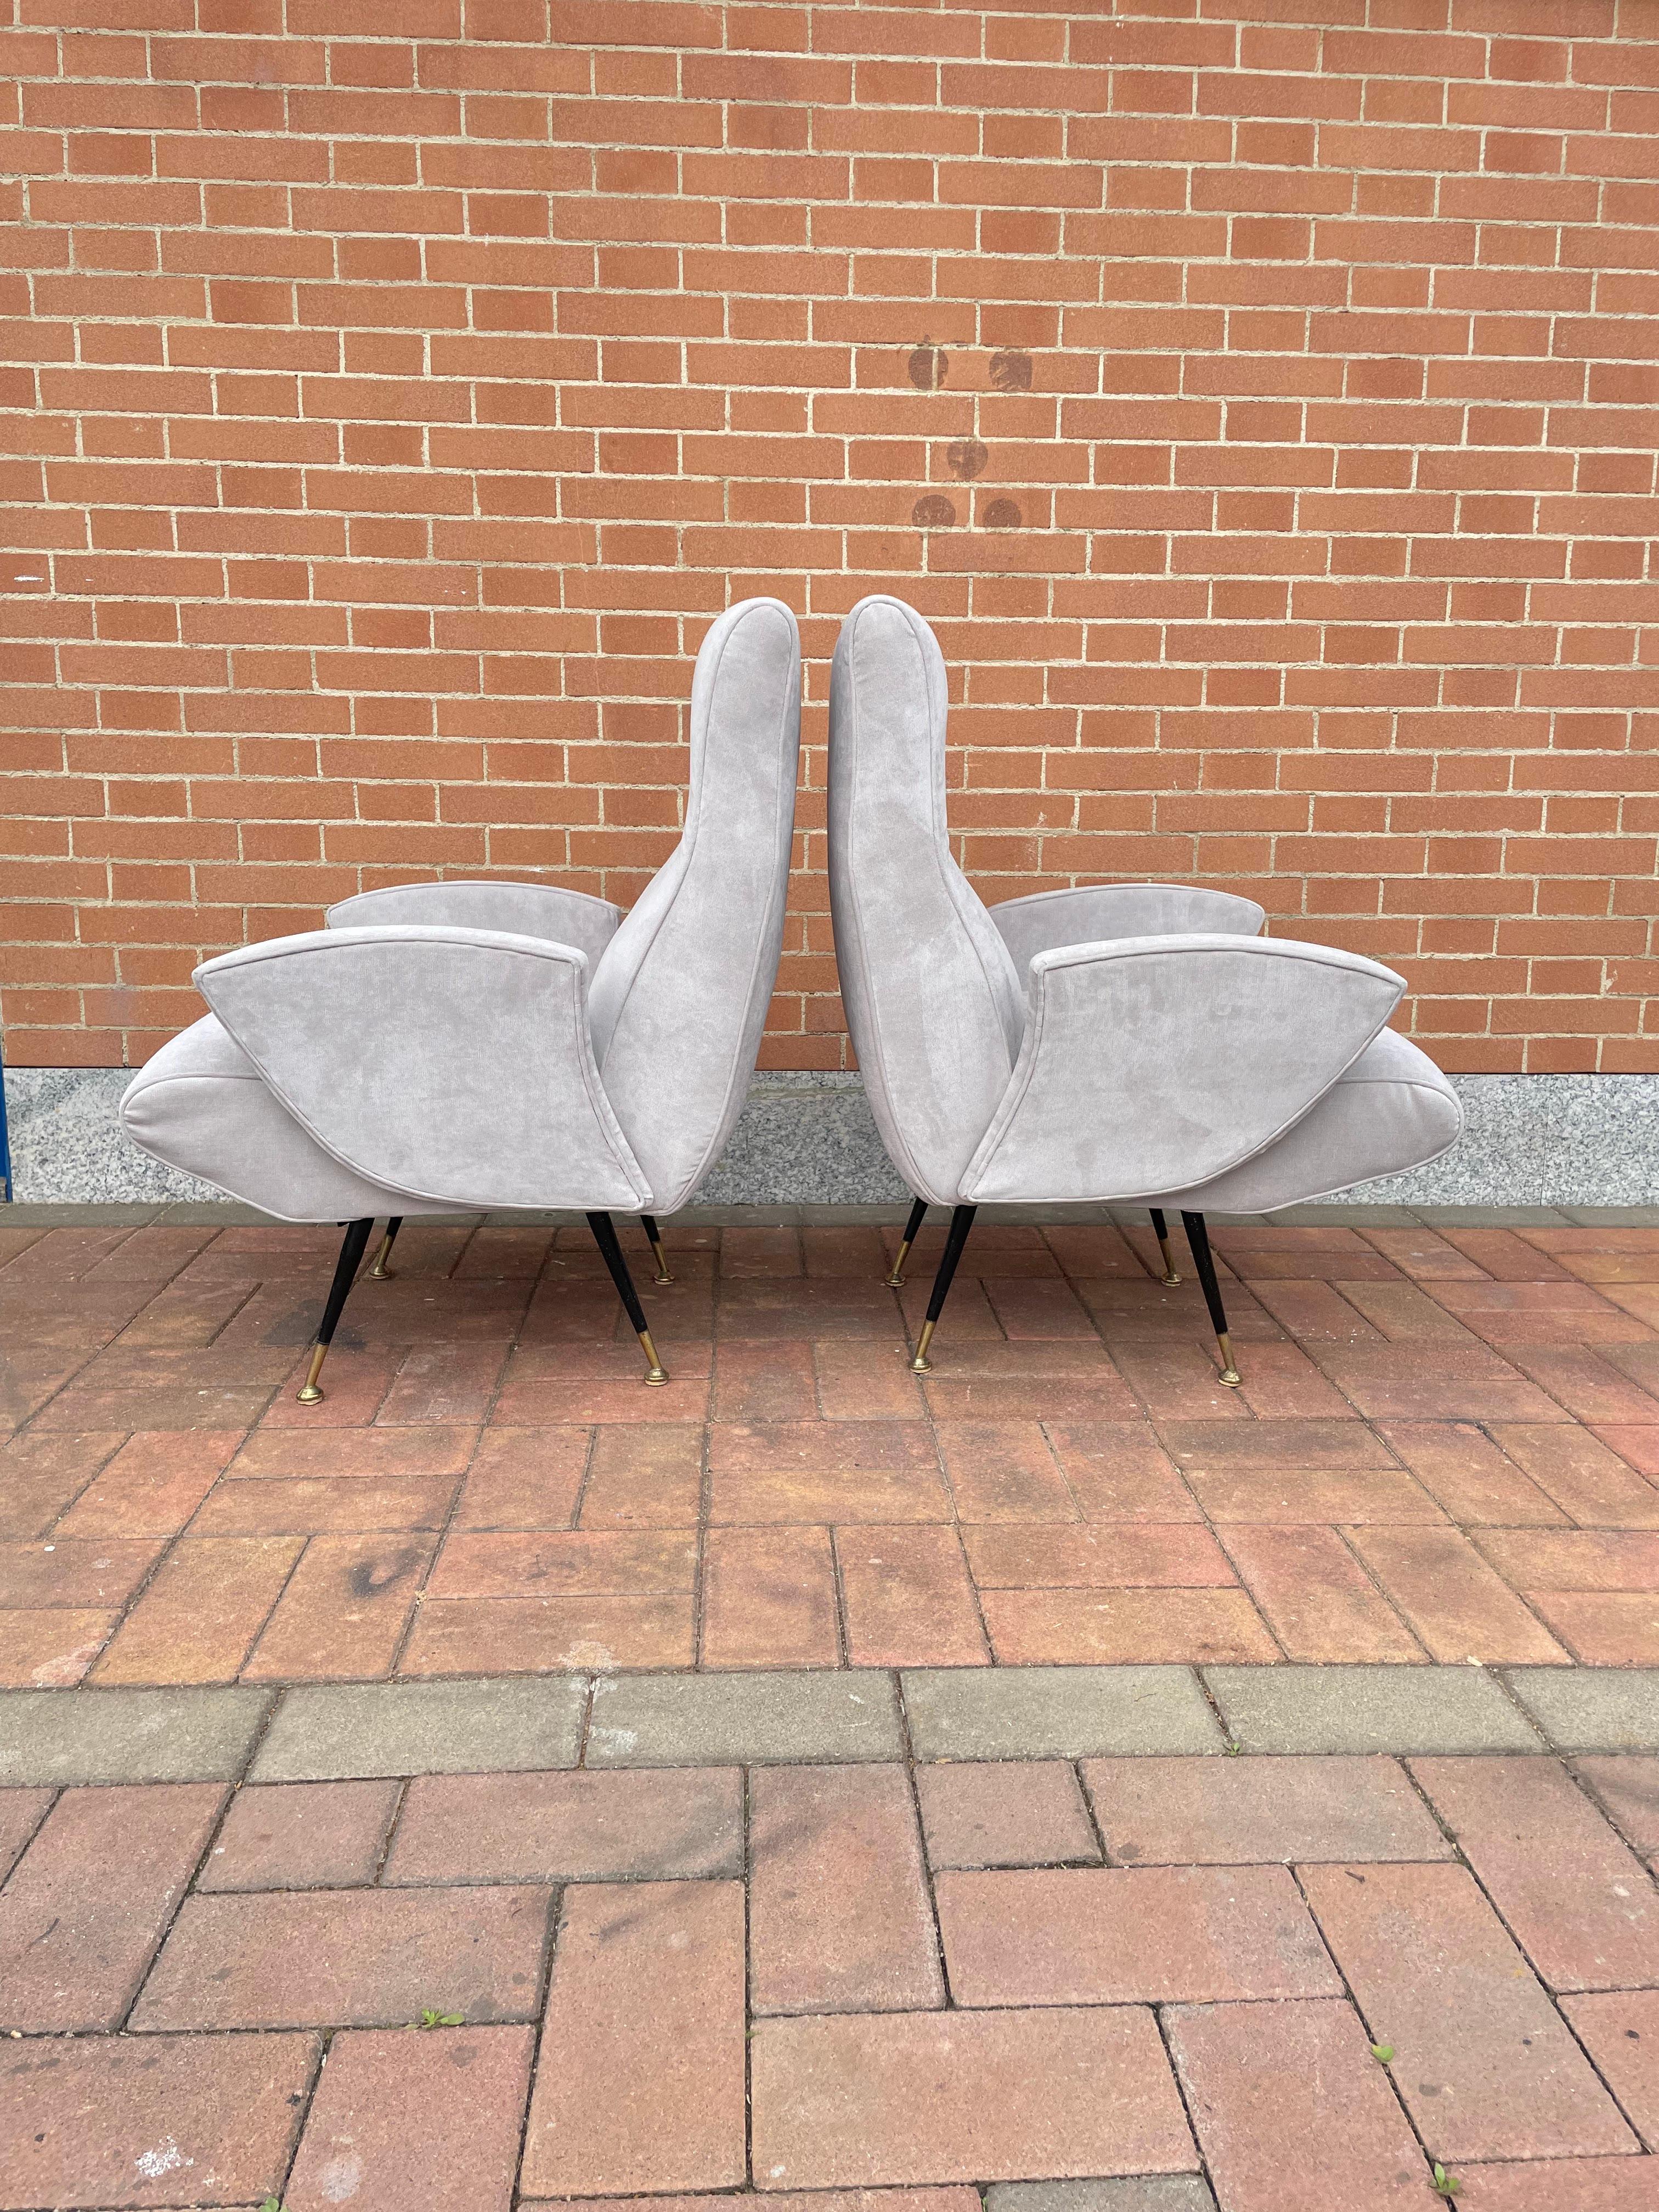 Ensemble de 2 fauteuils des années 1950 attribués à Nino Zoncada.
Ils ont été entièrement restaurés avec la réfection totale de la sellerie en tissu lavable dans une couleur neutre.
Pied avec embout en laiton.
Elegant et avec un design neutre,